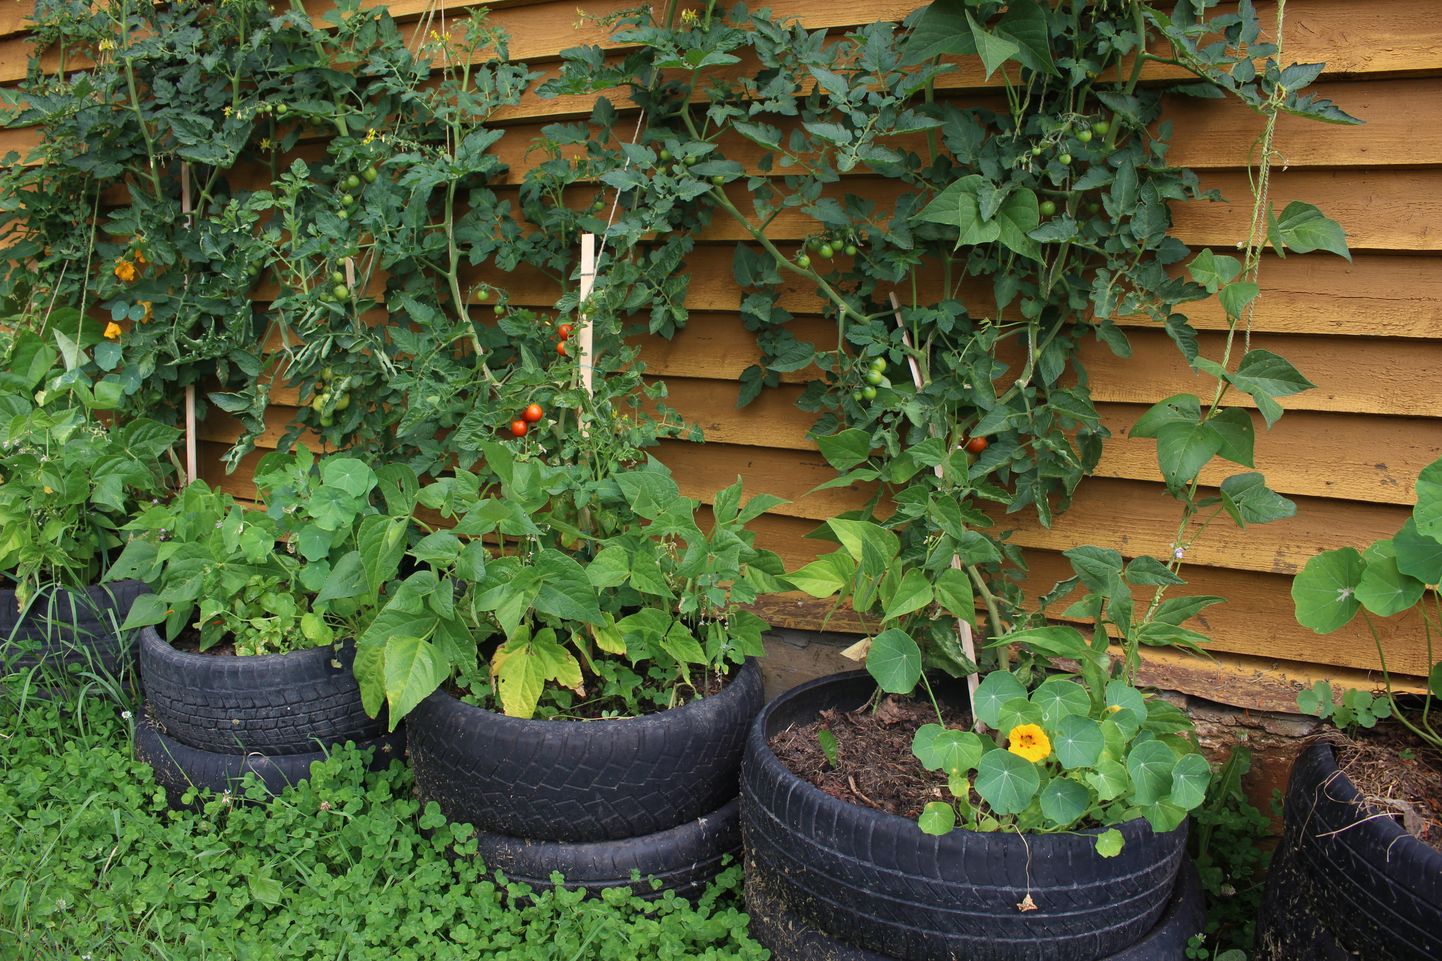 Võrumaal Vastseliina lähistel asuvas Eesti ühes suuremas permakultuurist inspireeritud taluaias näeb, et kui nutikalt ära kasutada sooja mikrokliimaga seinaääred, võib väiksel krundil märgatavalt suurendada taimede kasvupinda.